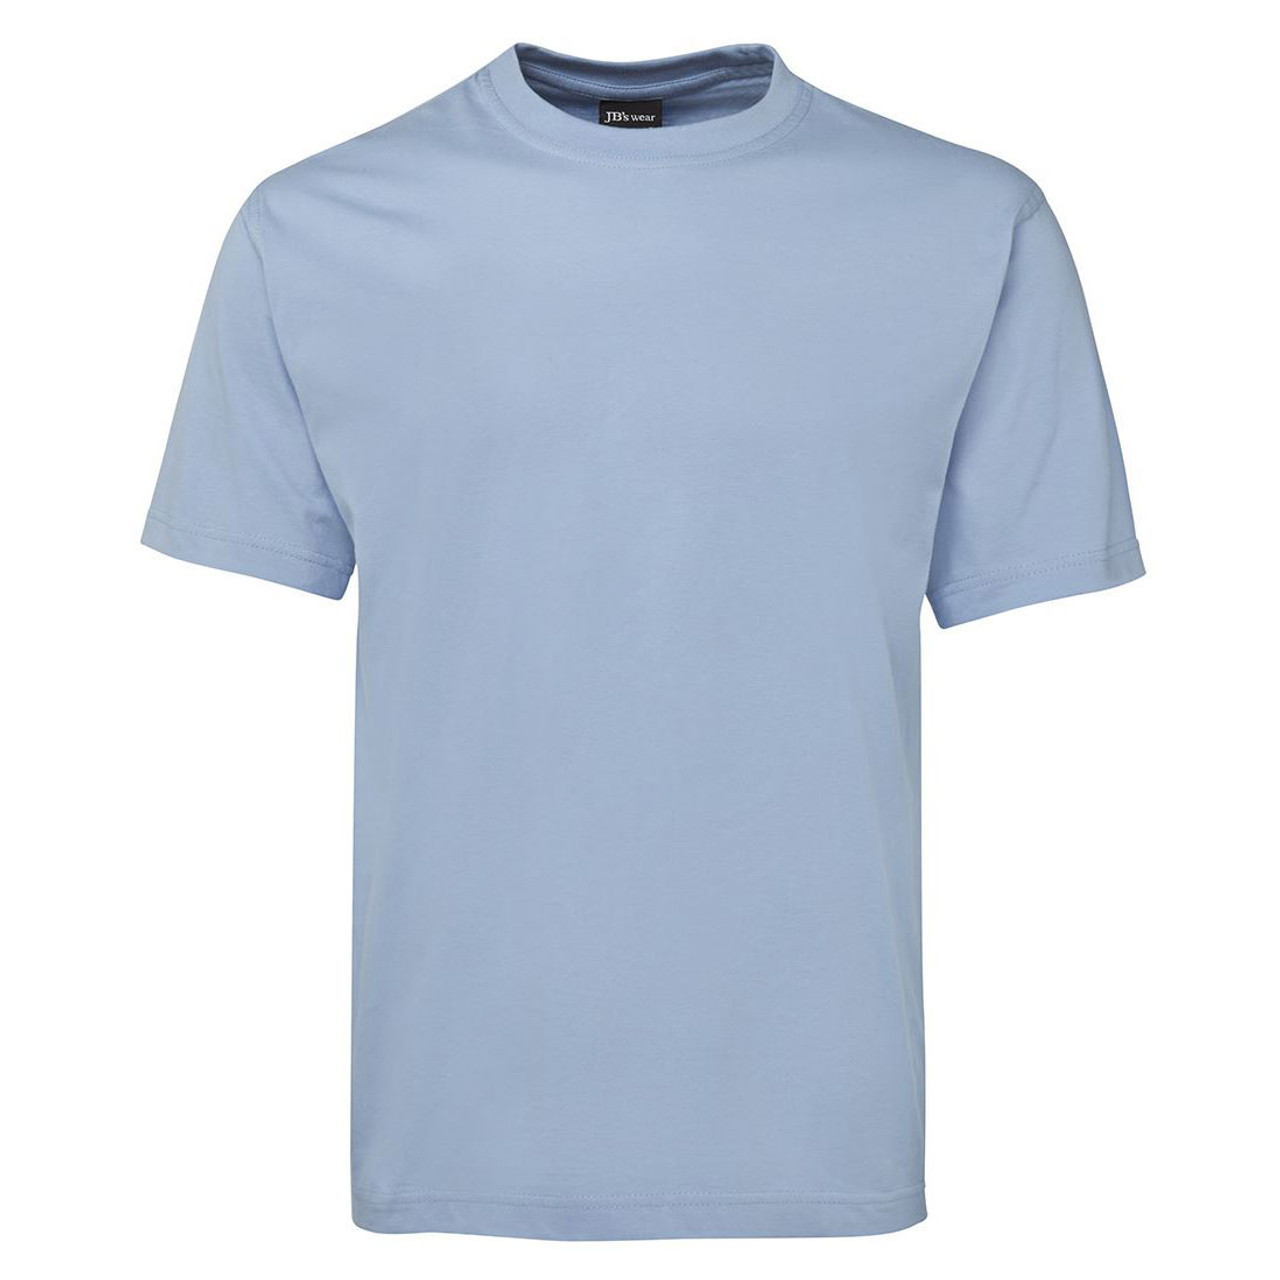 wholesale plain jersey cotton tshirt | crew neck | bulk buy discount online